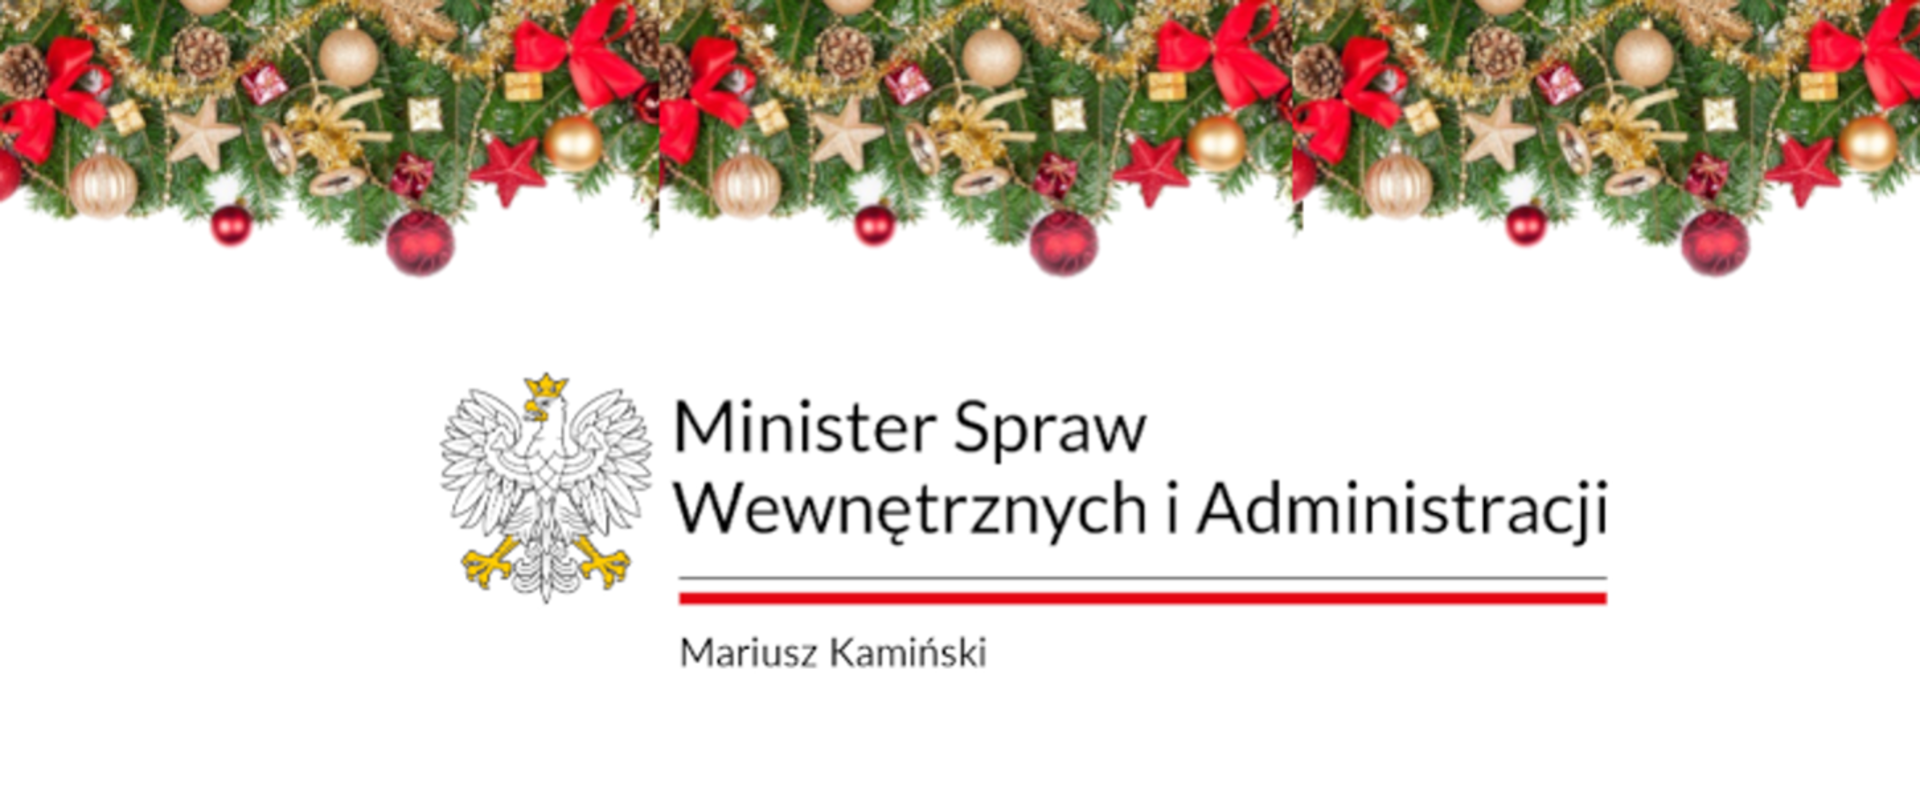 Zdjęcie przedstawia życzenia świąteczne Ministra Spraw Wewnętrznych i Administracji